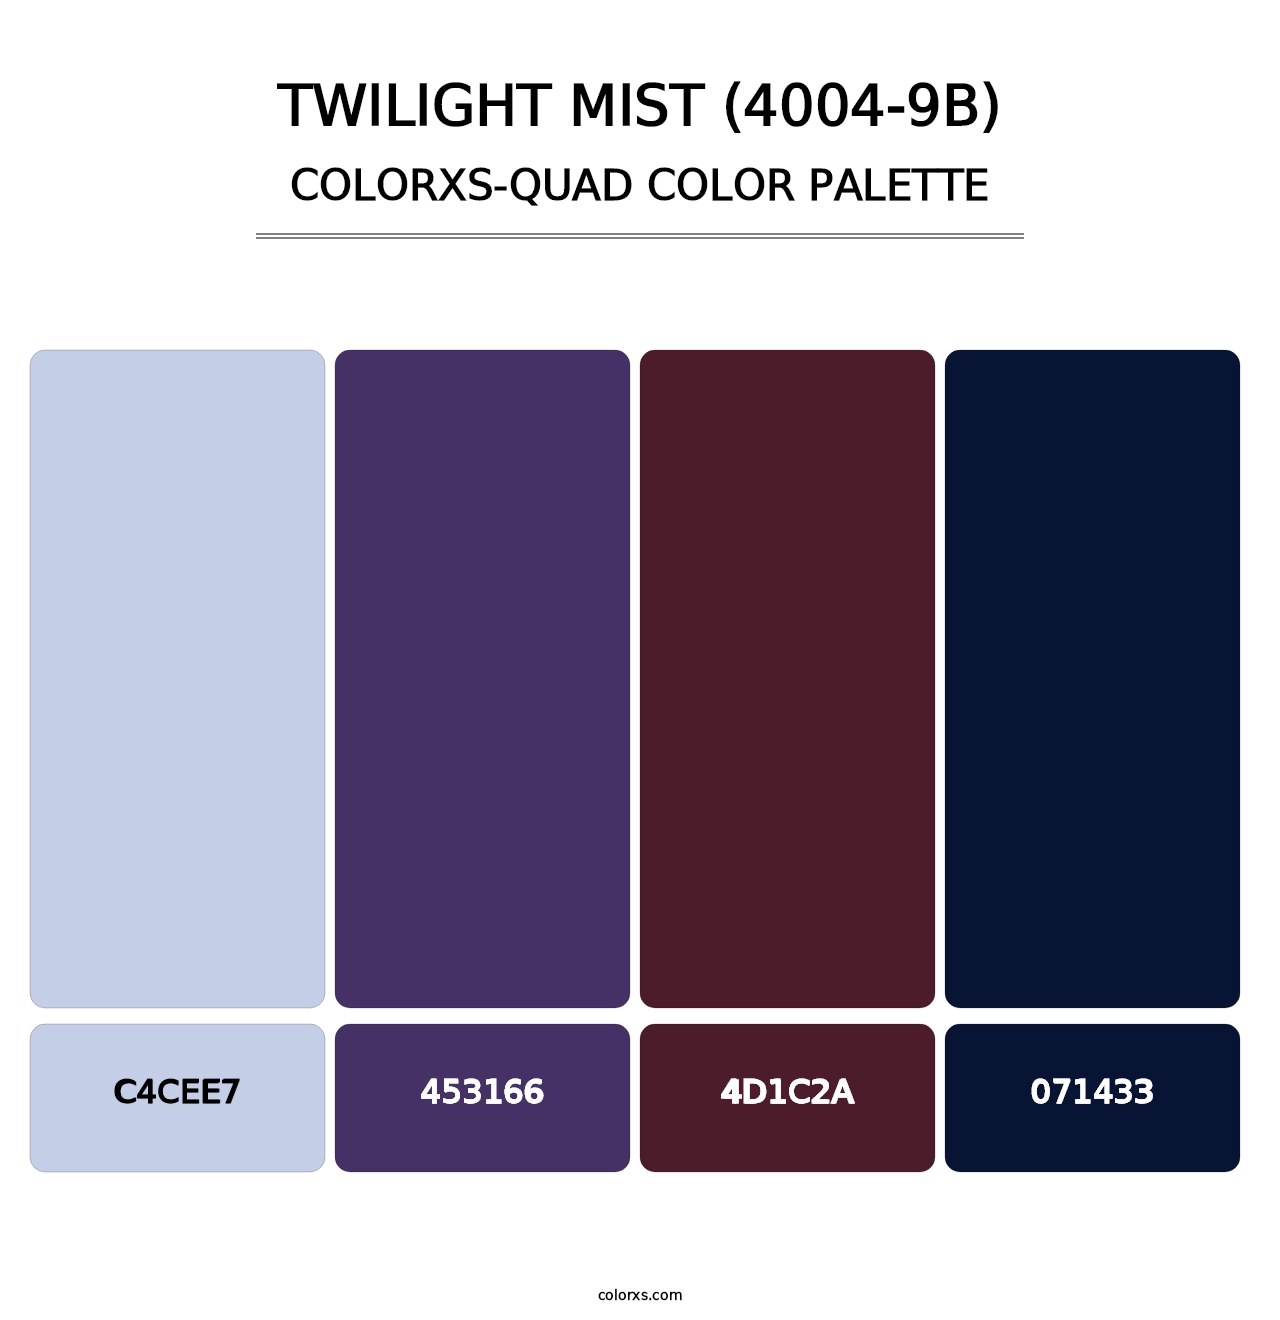 Twilight Mist (4004-9B) - Colorxs Quad Palette